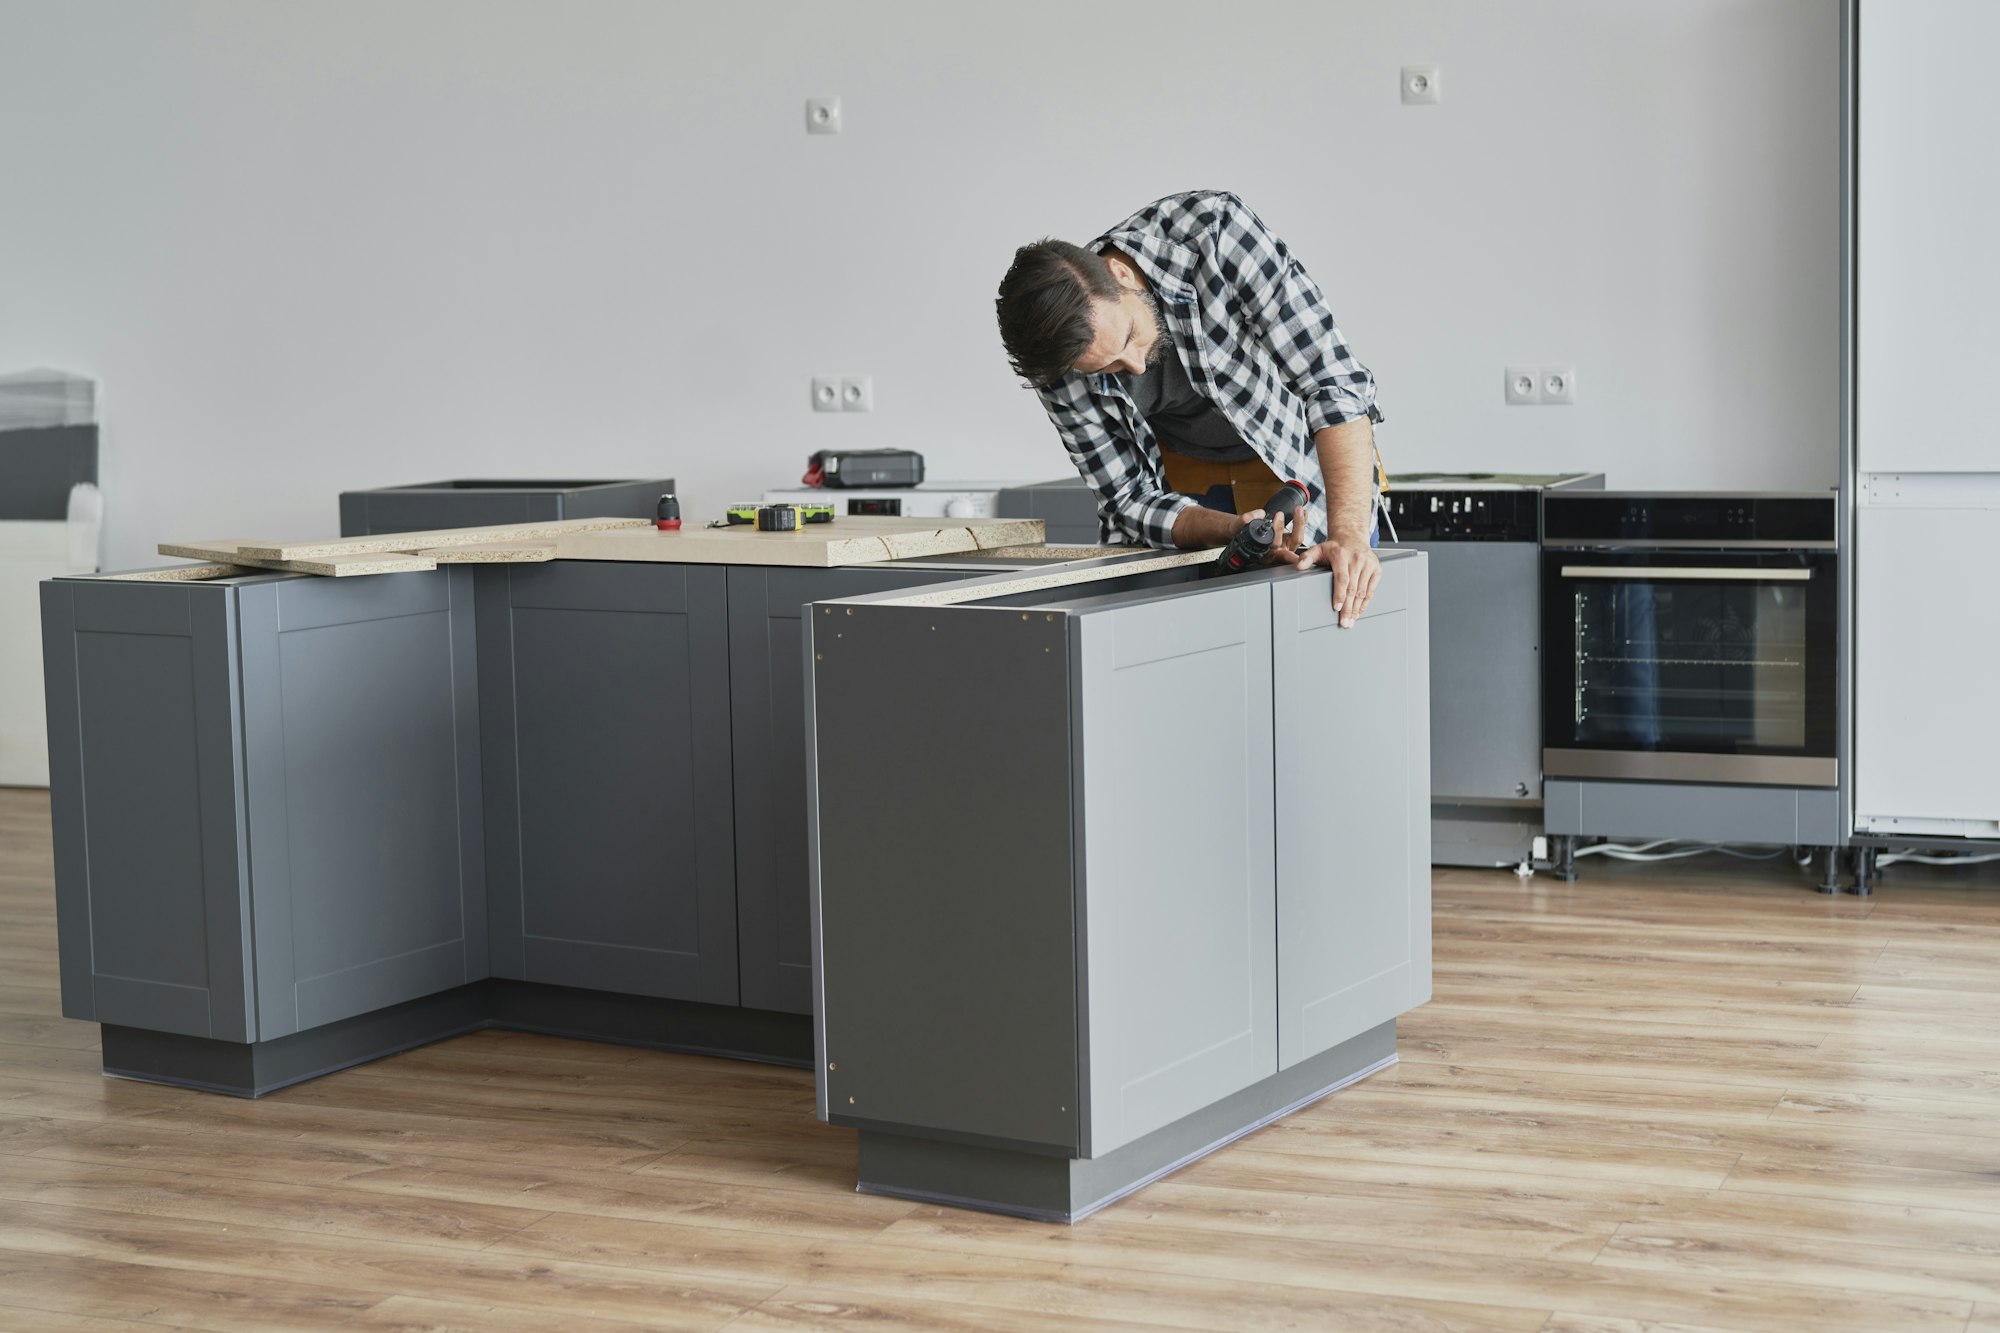 Carpenter mounting kitchen furniture